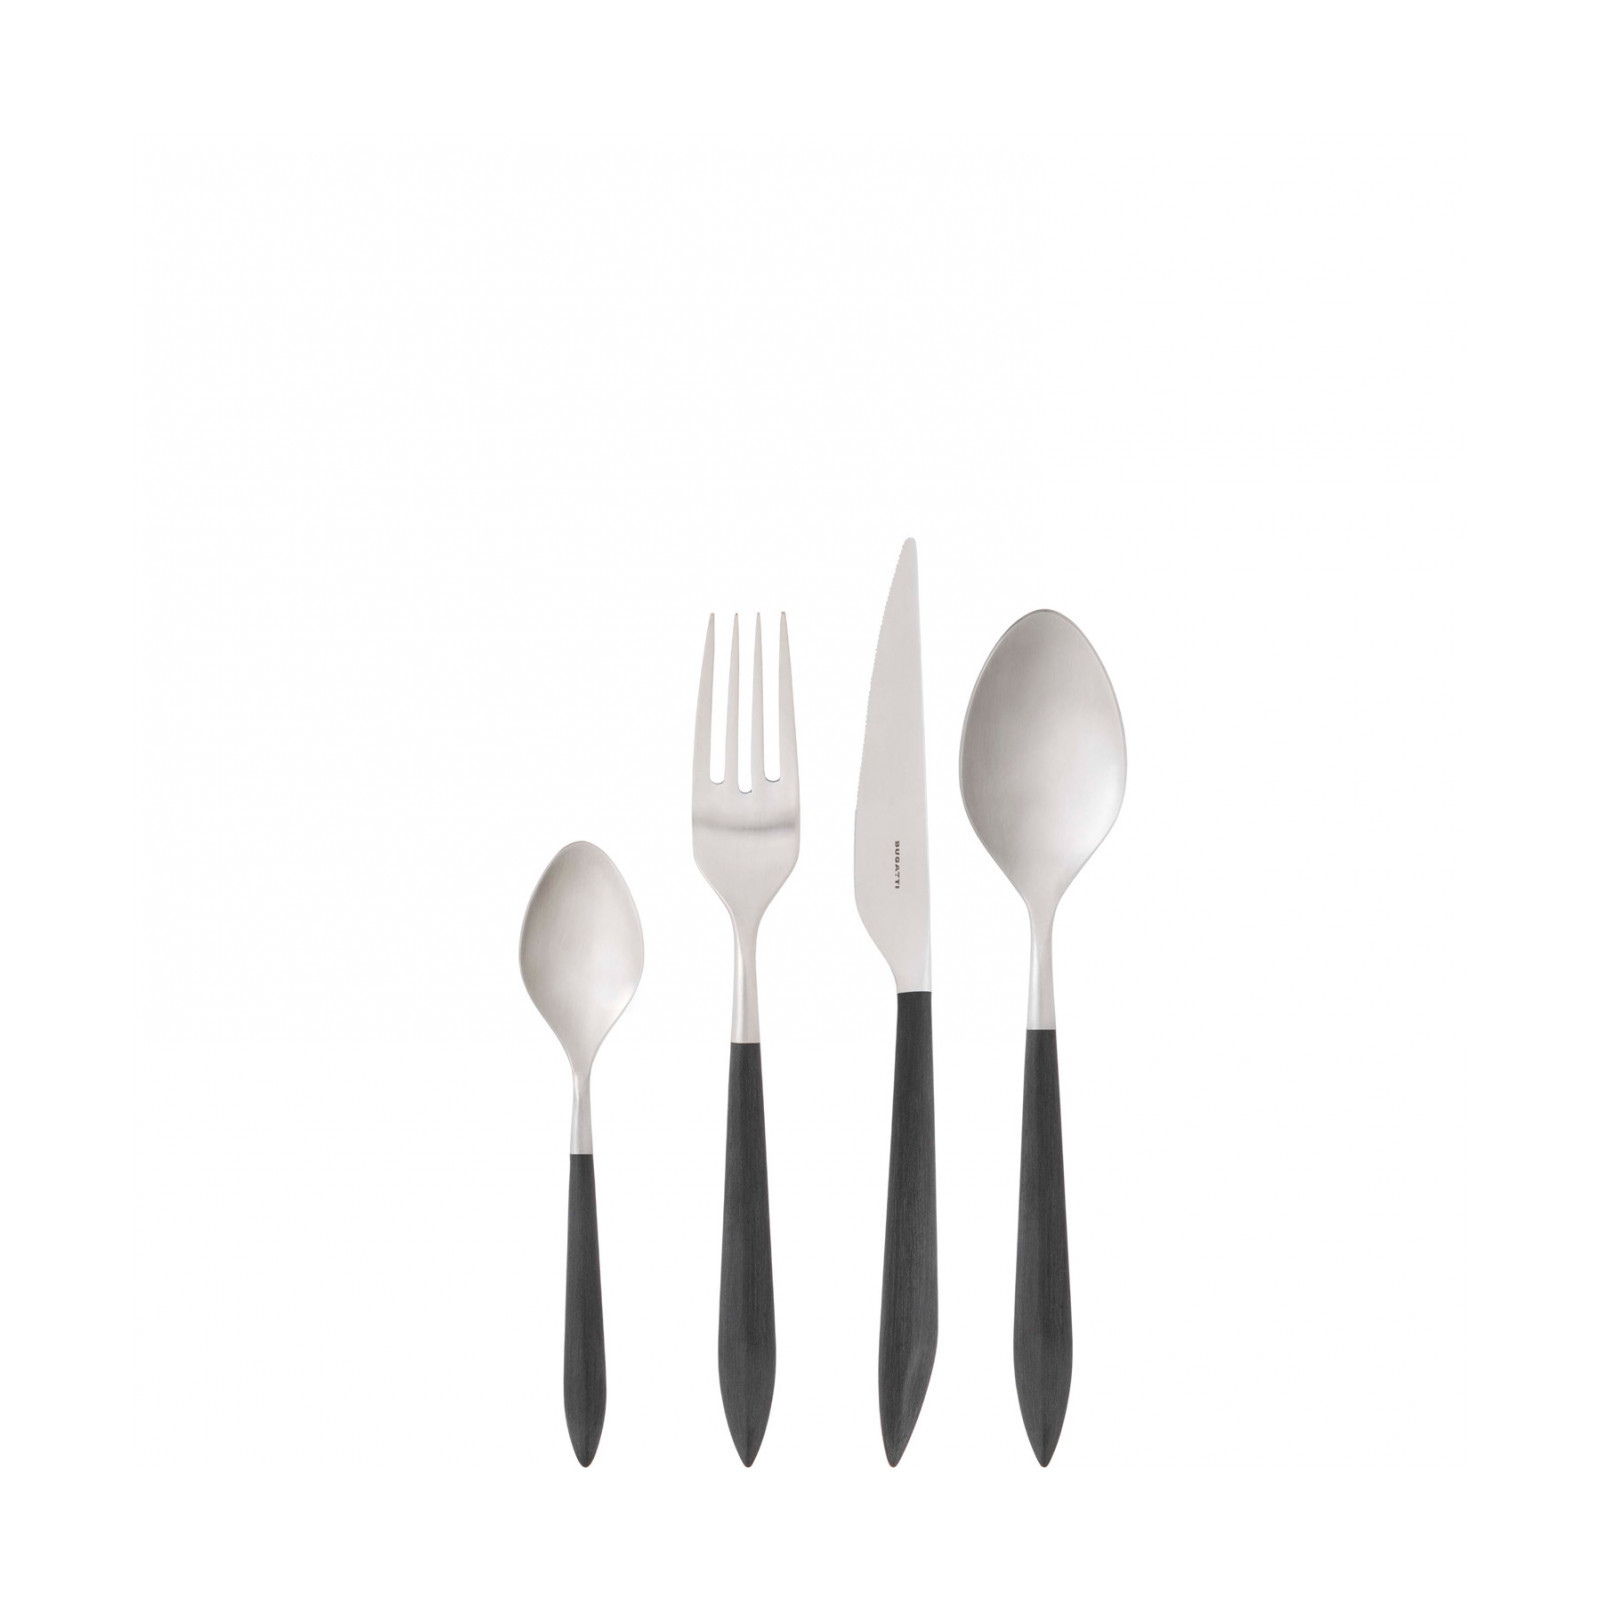 Bugatti kitchen - and appliances Designer small accessories home cutlery,